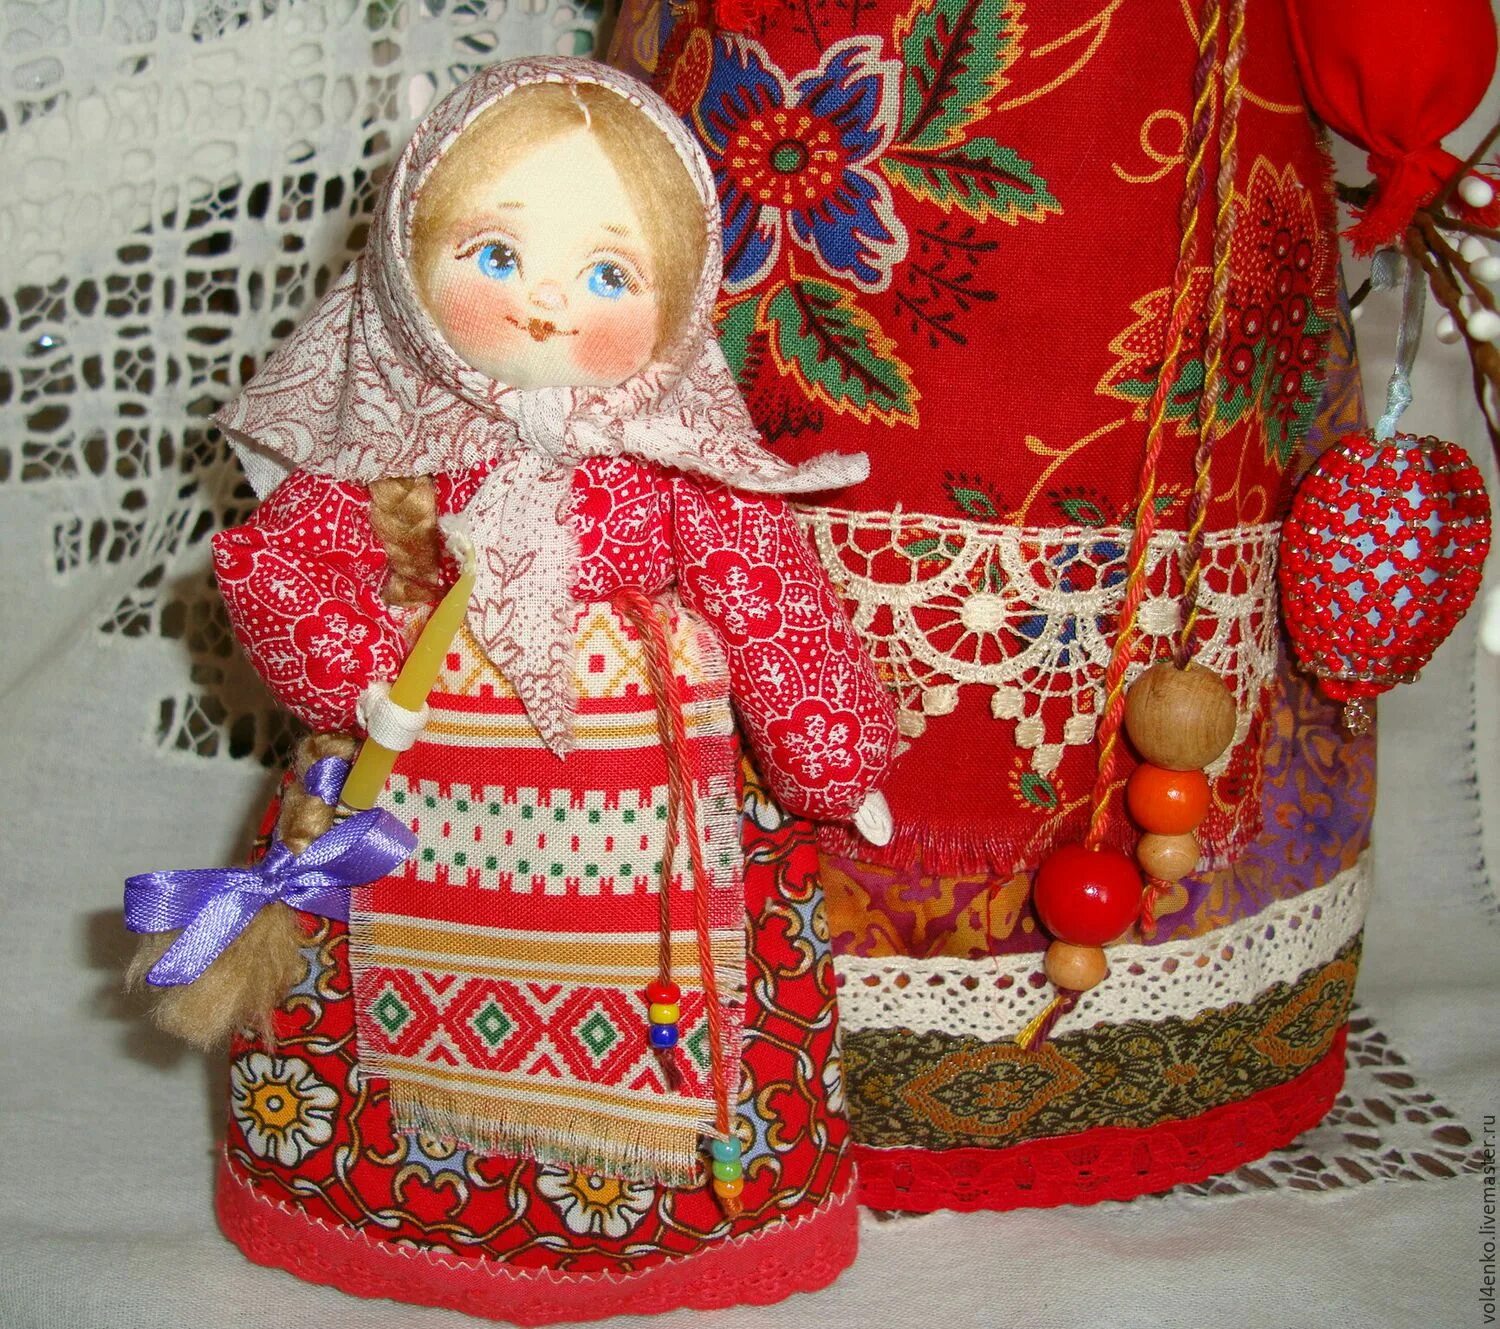 Традиционная русская кукла. Кукла в народном стиле. Куклы в русском стиле. Куклы Тряпичные в народном стиле.